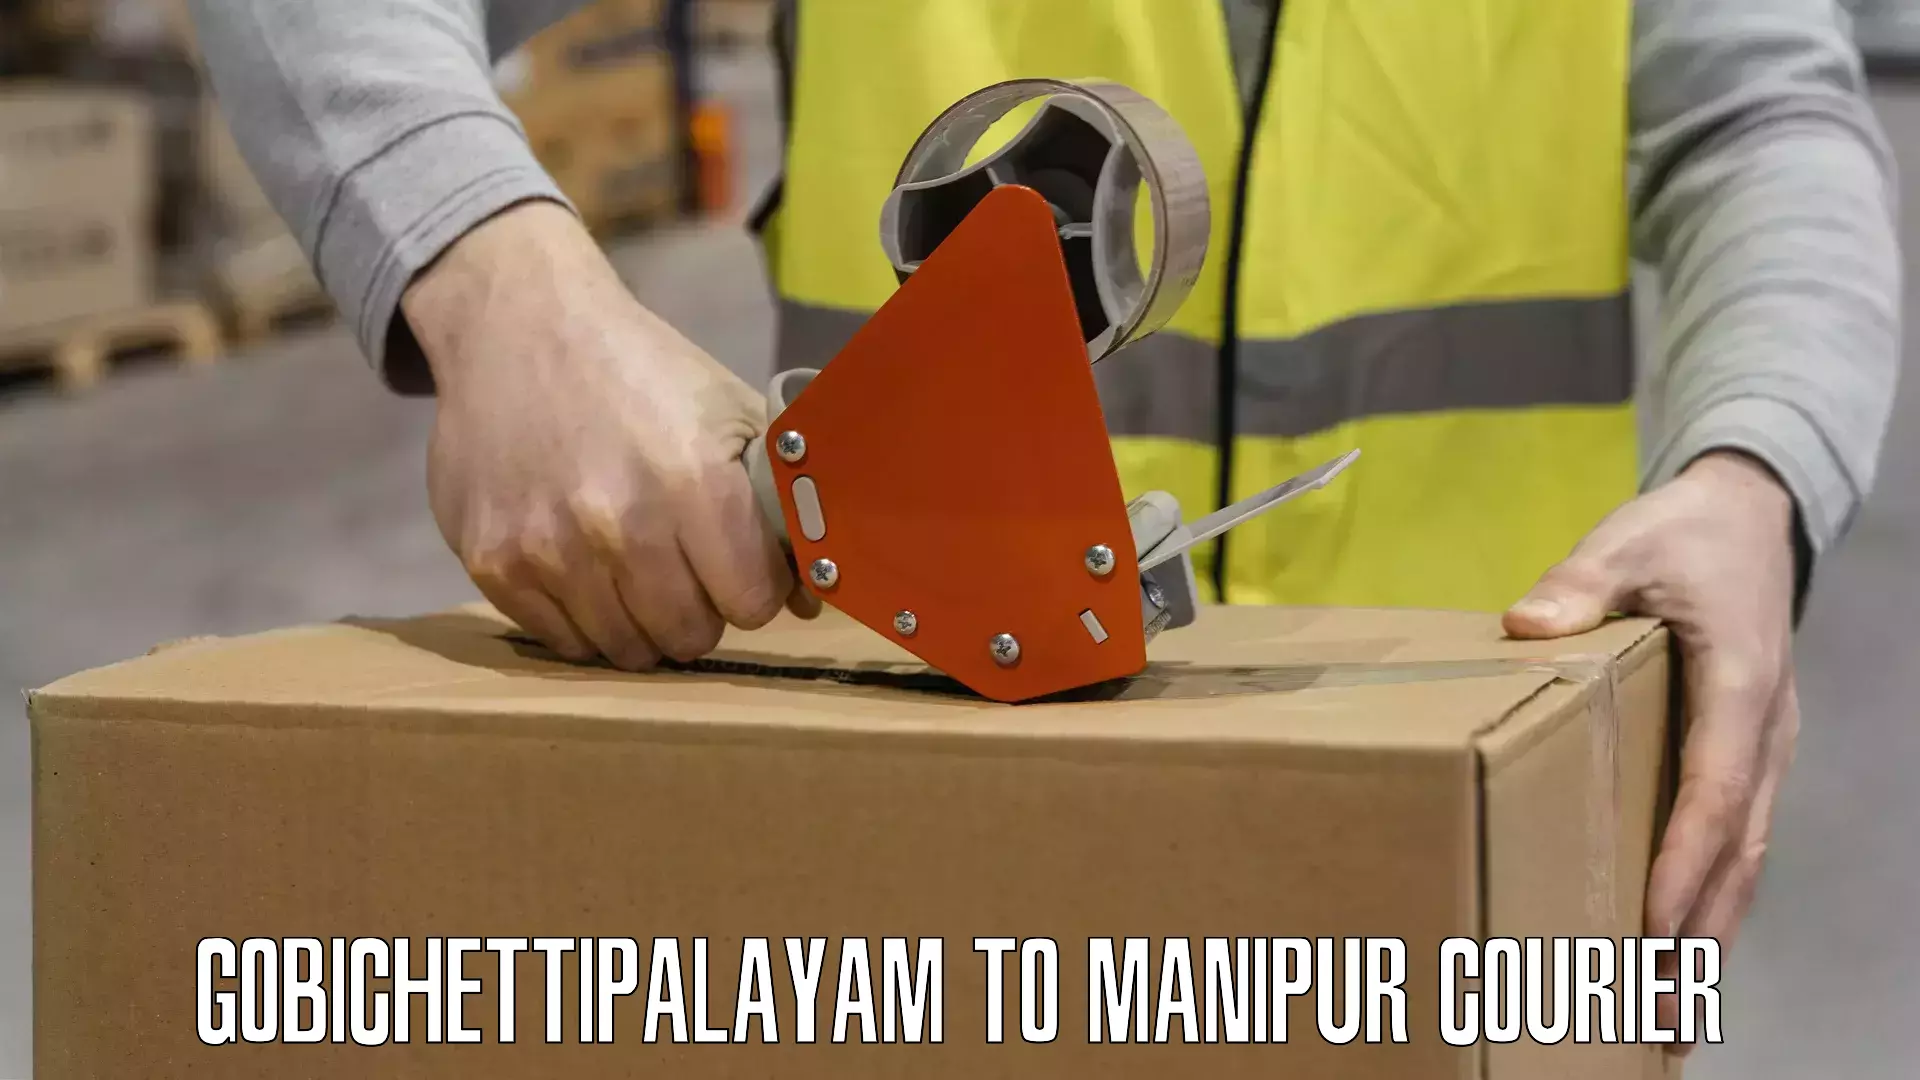 Flexible shipping options Gobichettipalayam to IIIT Senapati